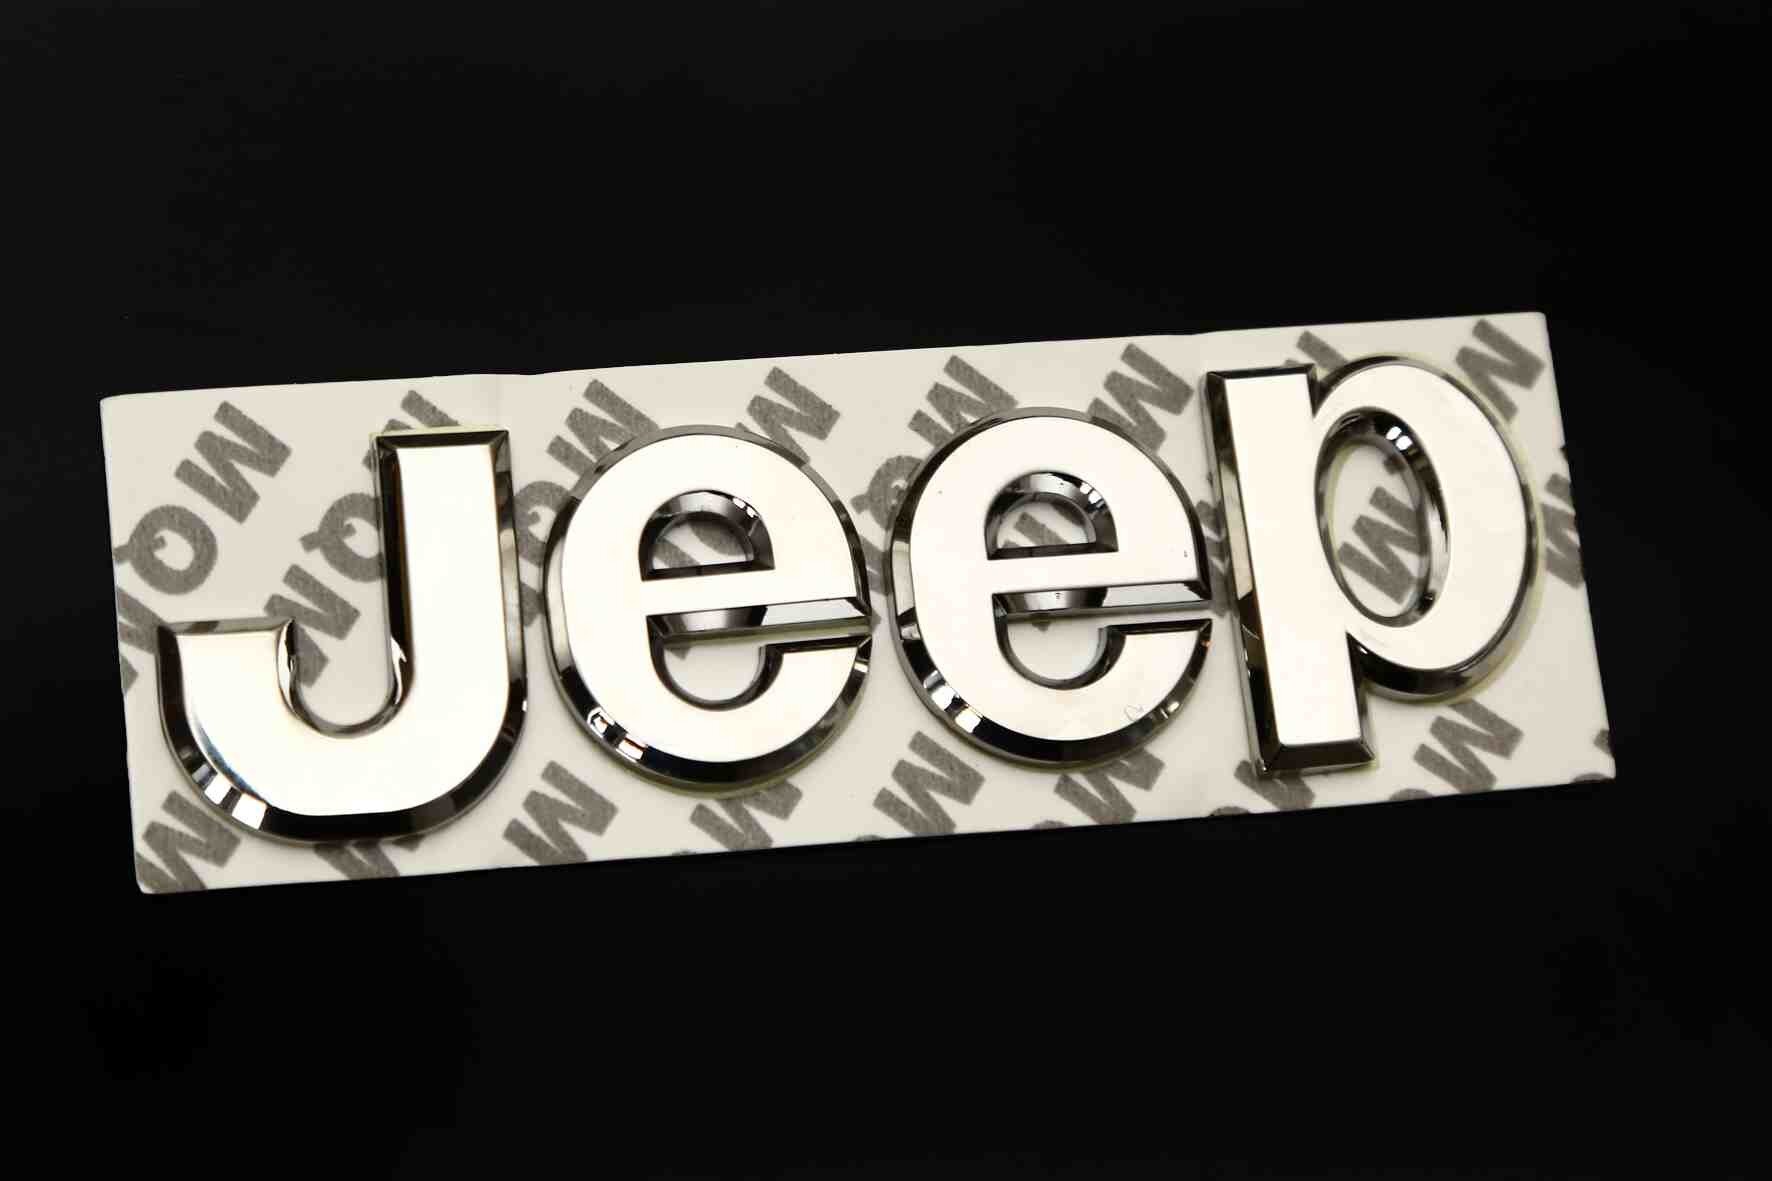 jeep-on-kaput-yazisi-armasi-krom-1.jpg